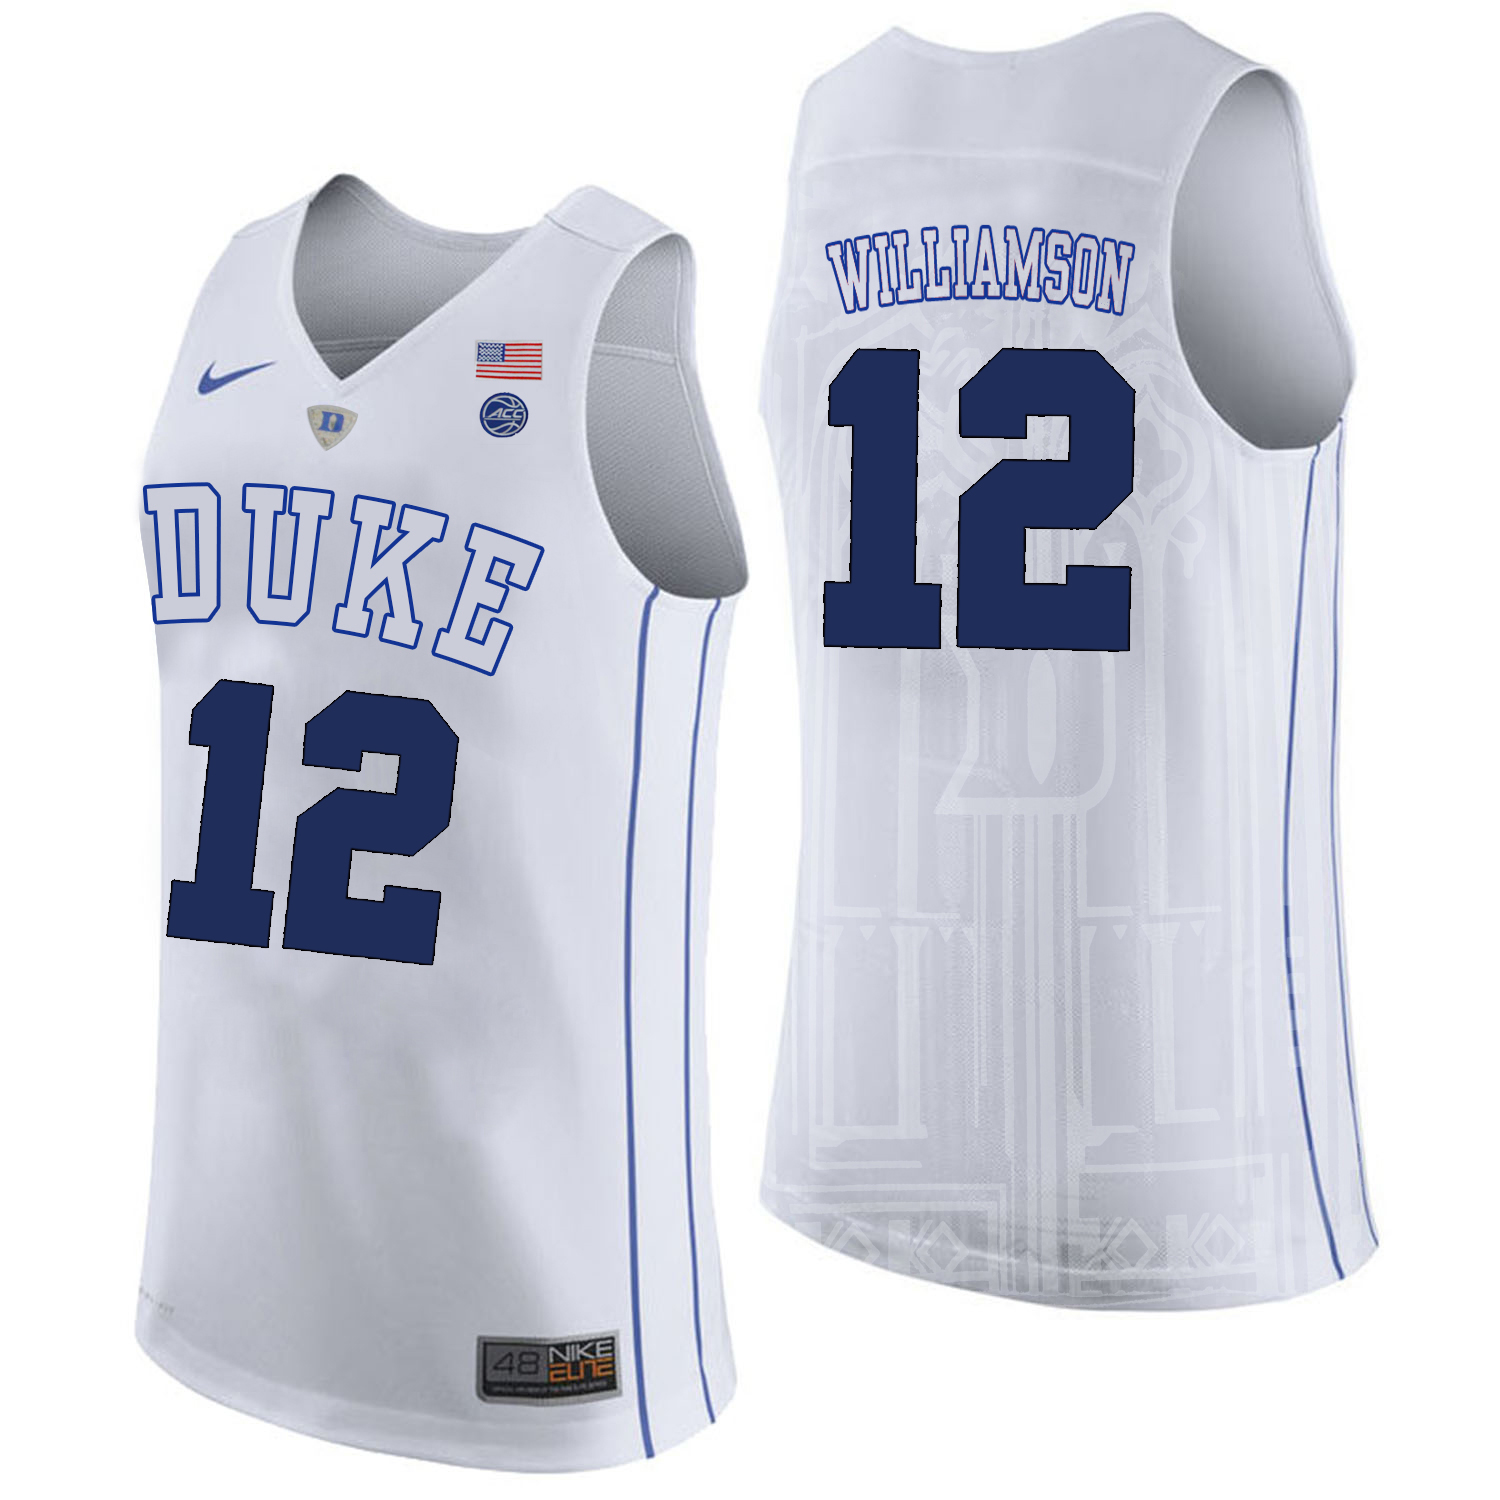 Duke Blue Devils 12 Zion Williamson White College Basketball Elite Jersey